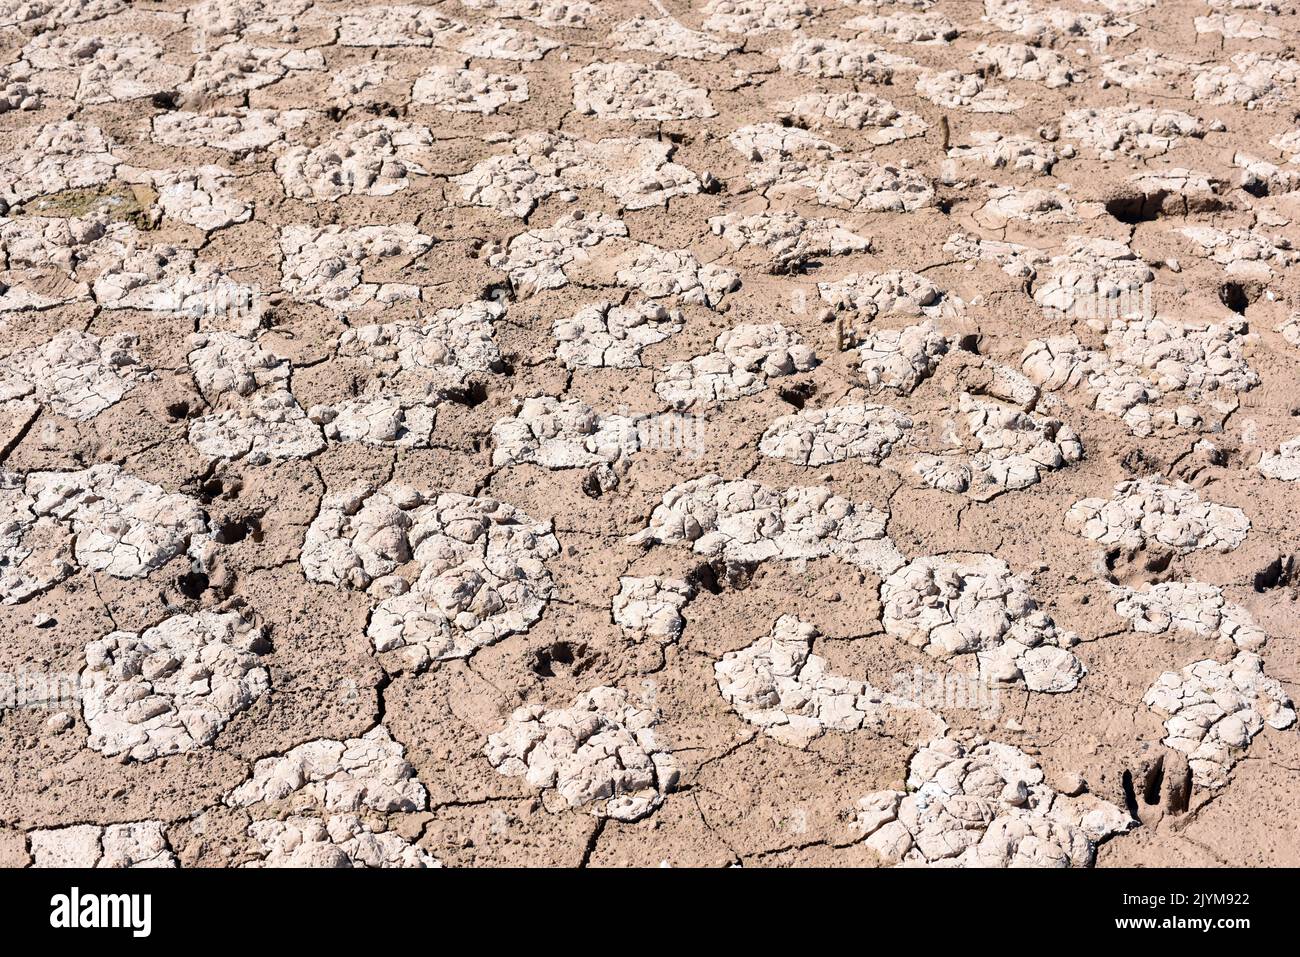 Tierra seca, cuarteada, debido a la sequía, producido por el cambio climático Stock Photo